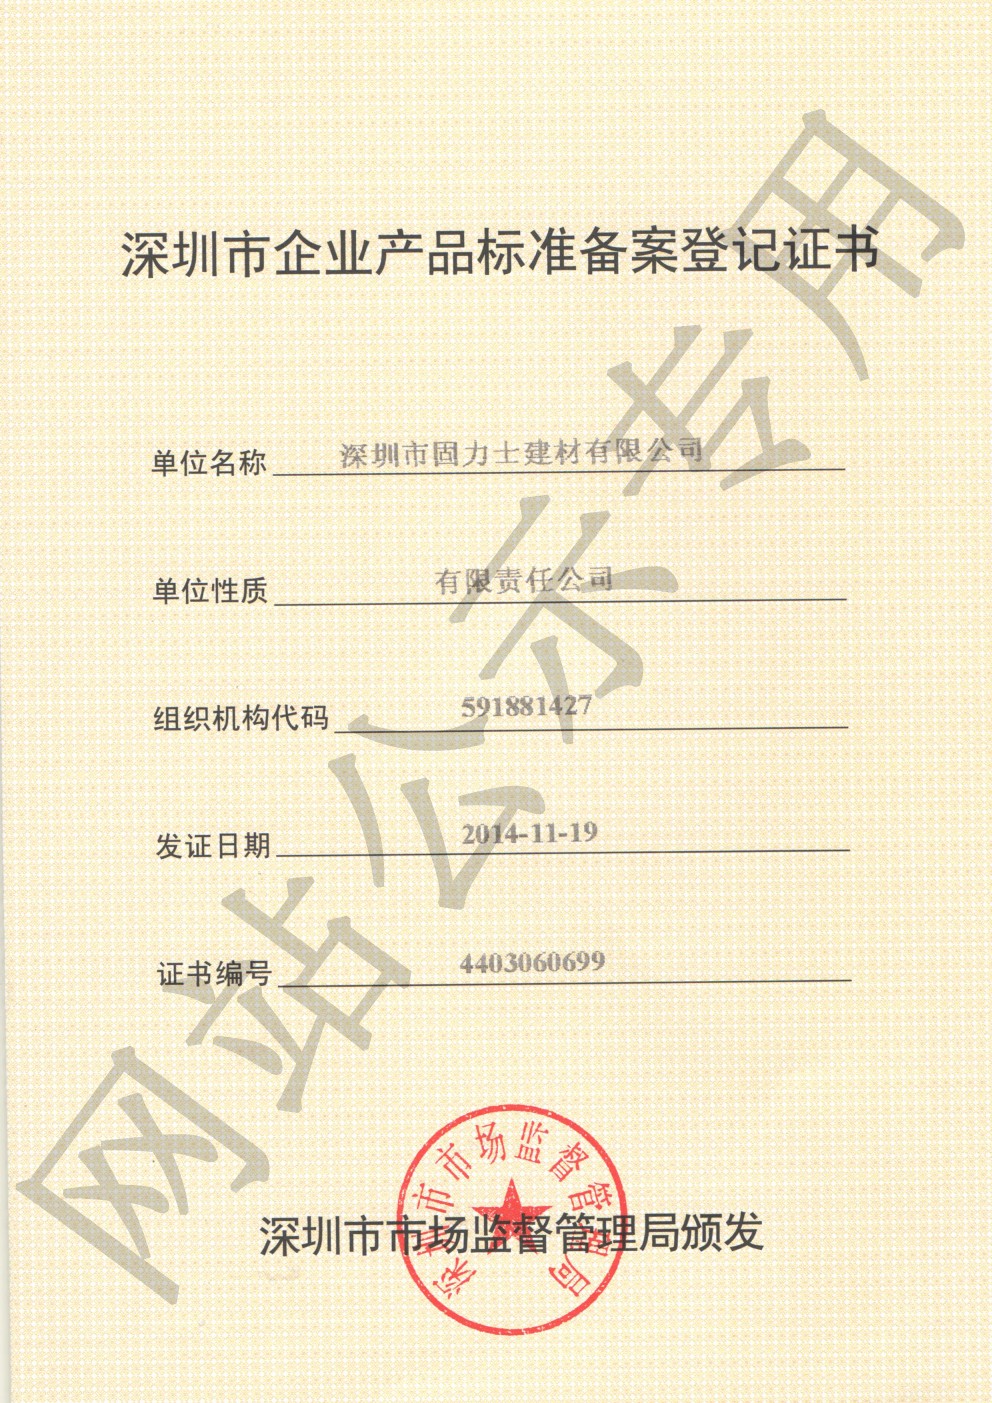 格尔木企业产品标准登记证书